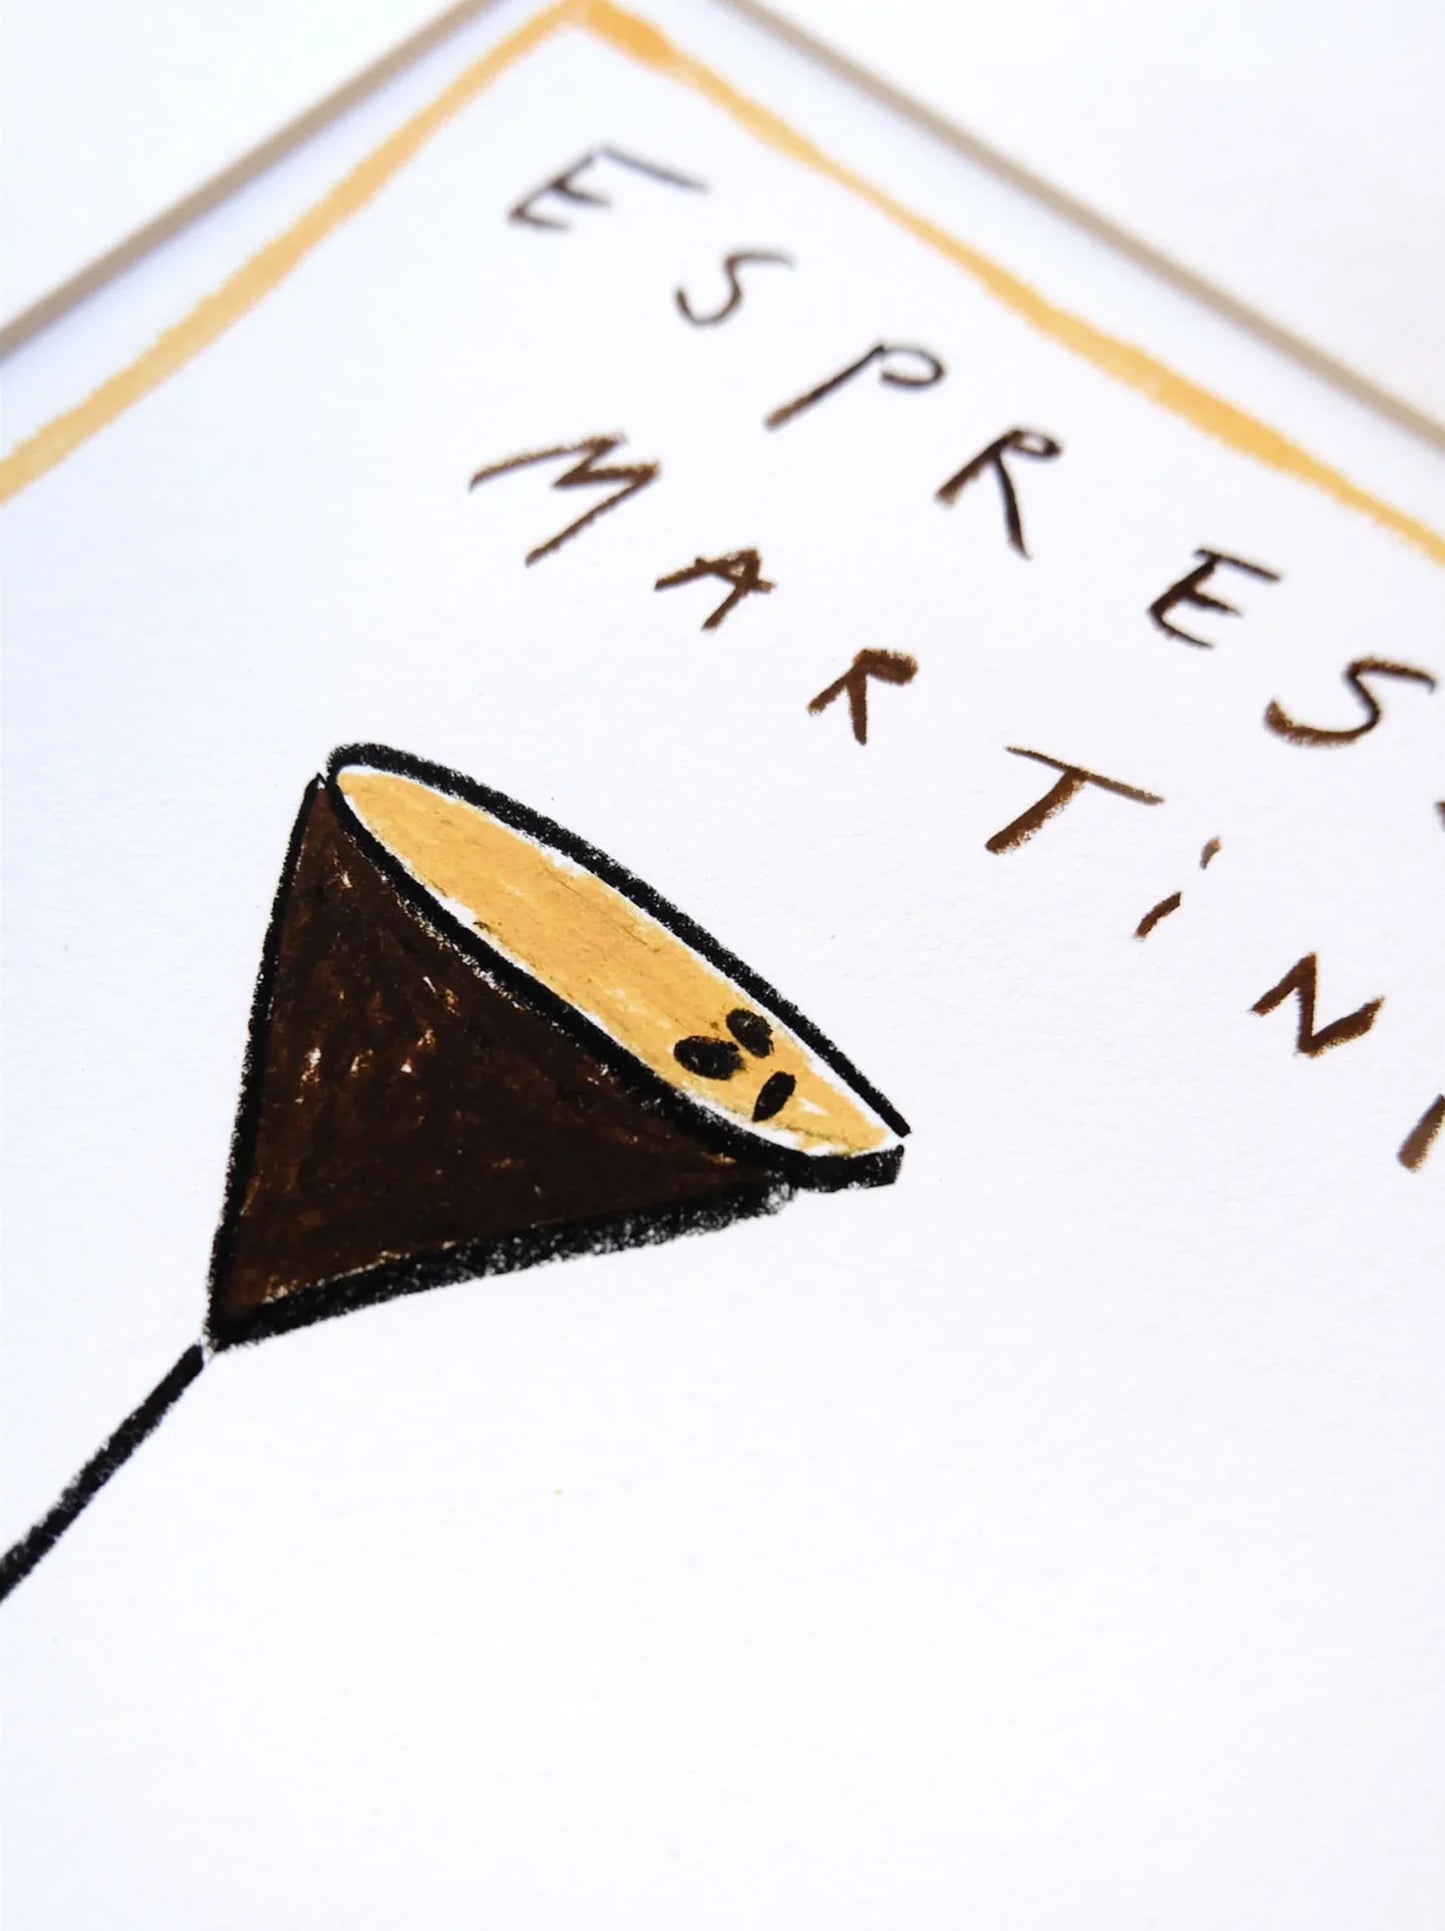 Espresso Martini Please Art Print